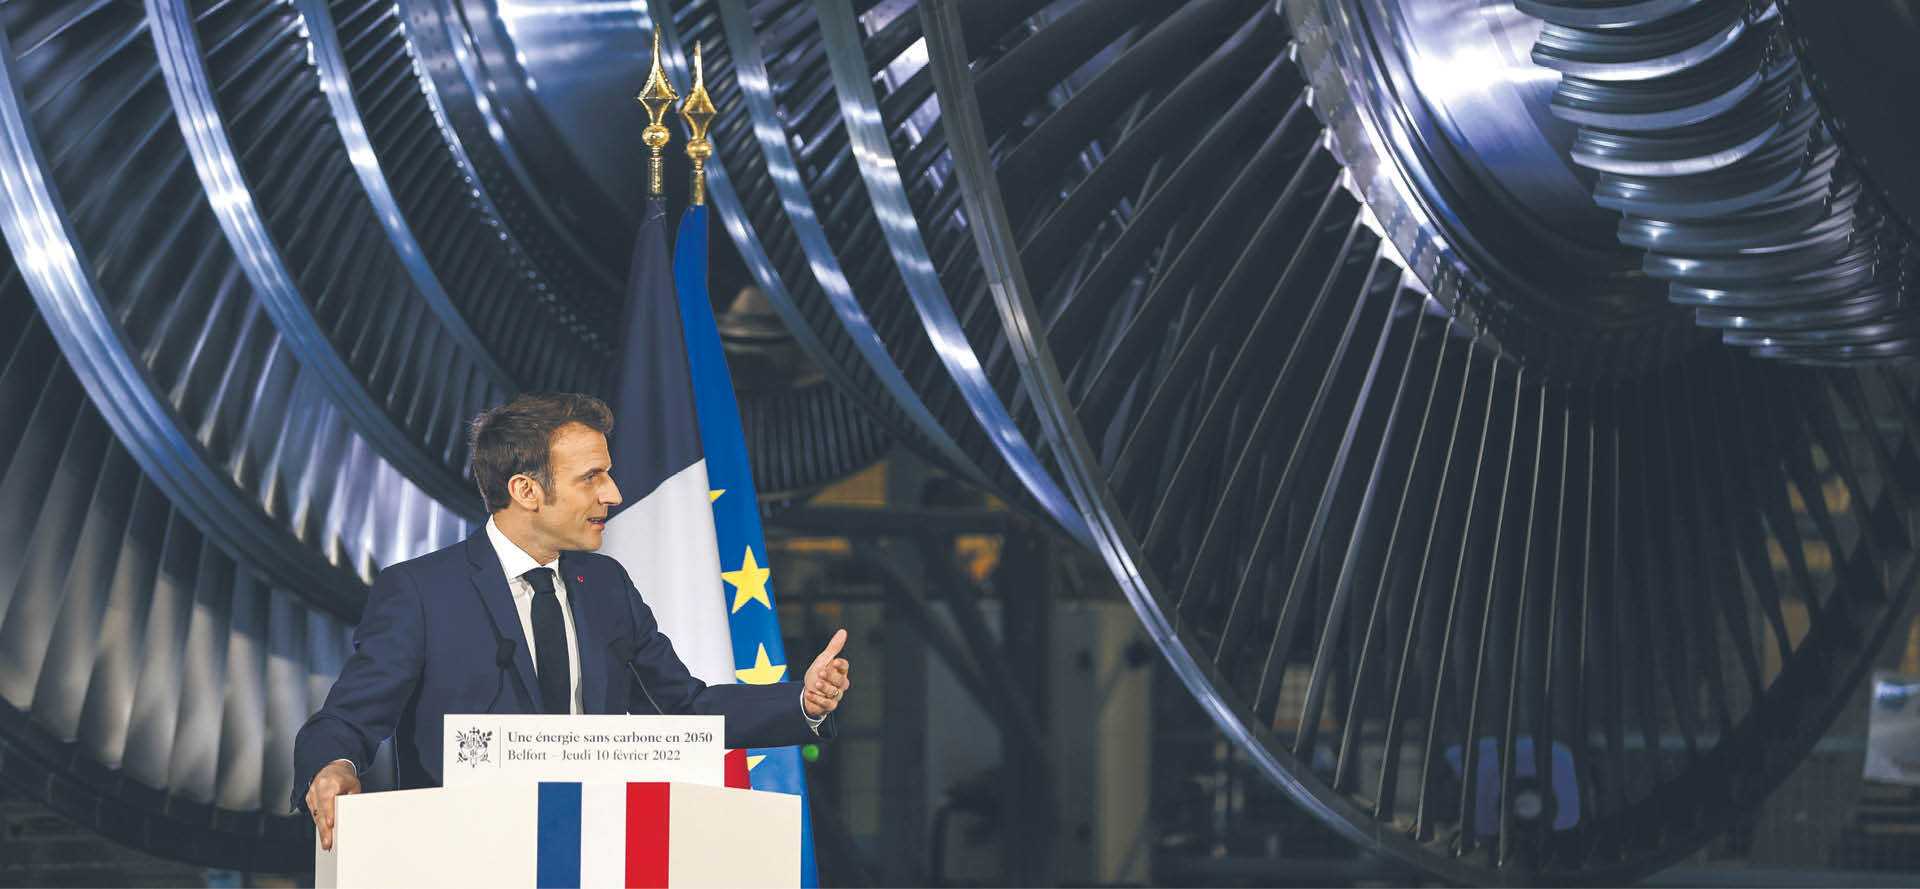 Budowa nowych reaktorów jądrowych to ważny element strategii energetycznej Francji. Na zdjęciu prezydent Emmanuel Macron podczas wystąpienia w zakładzie produkcyjnym GE Steam Power System